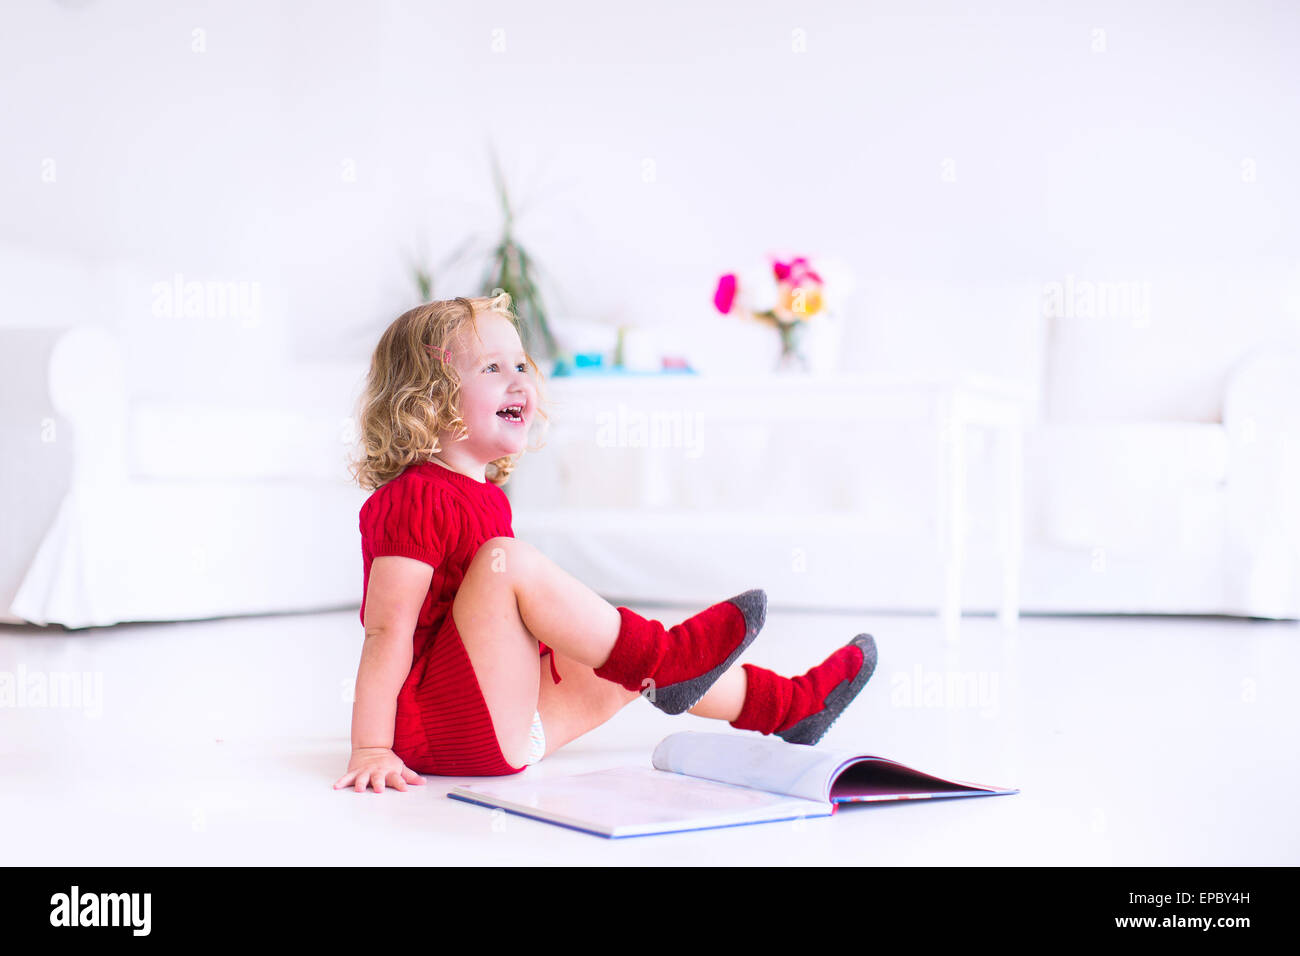 Niedliche kleine Mädchen mit dem lockigen Haar mit einer warmen roten Strickkleid und Socken ein Buch auf dem Boden sitzend Stockfoto